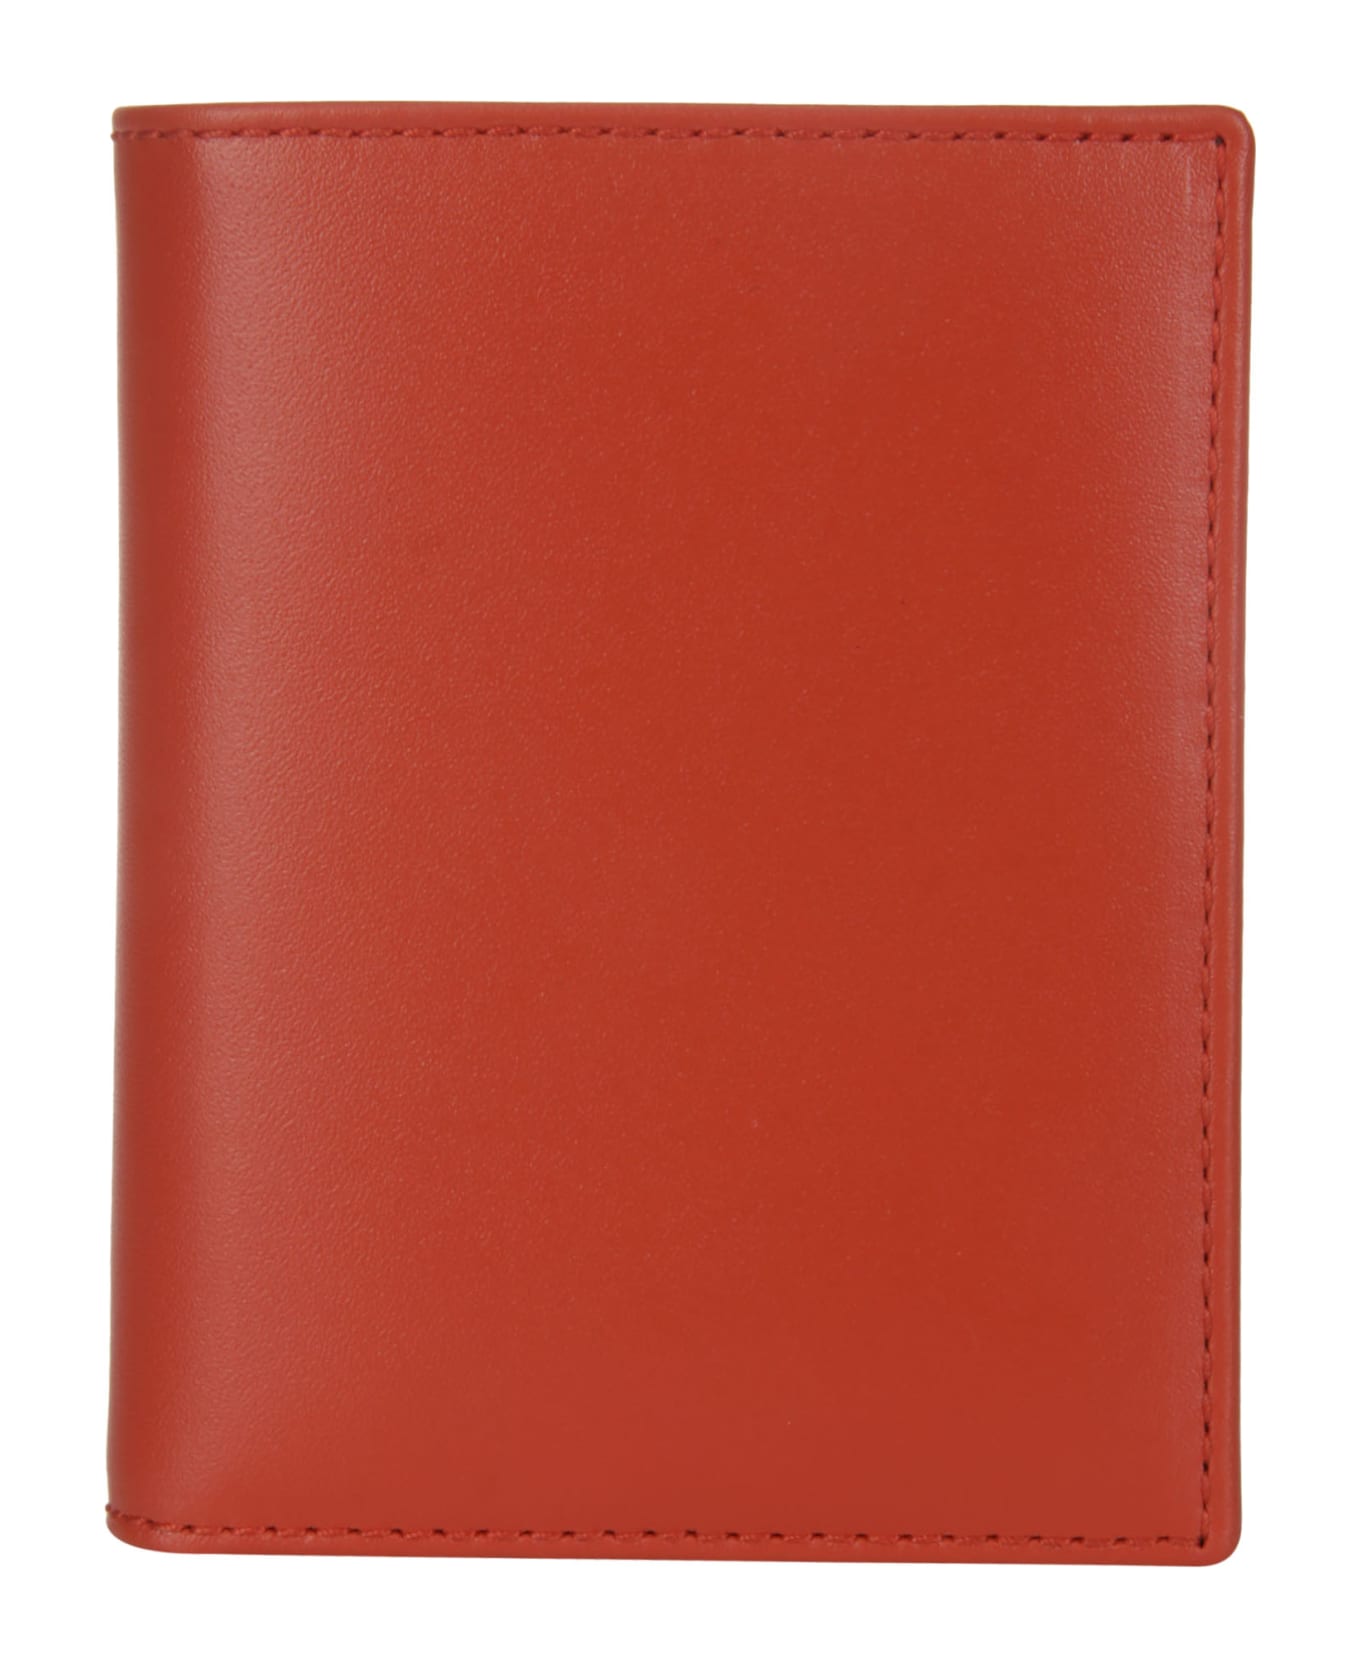 Comme des Garçons Wallet Classic Leather Line A - ORANGE 財布